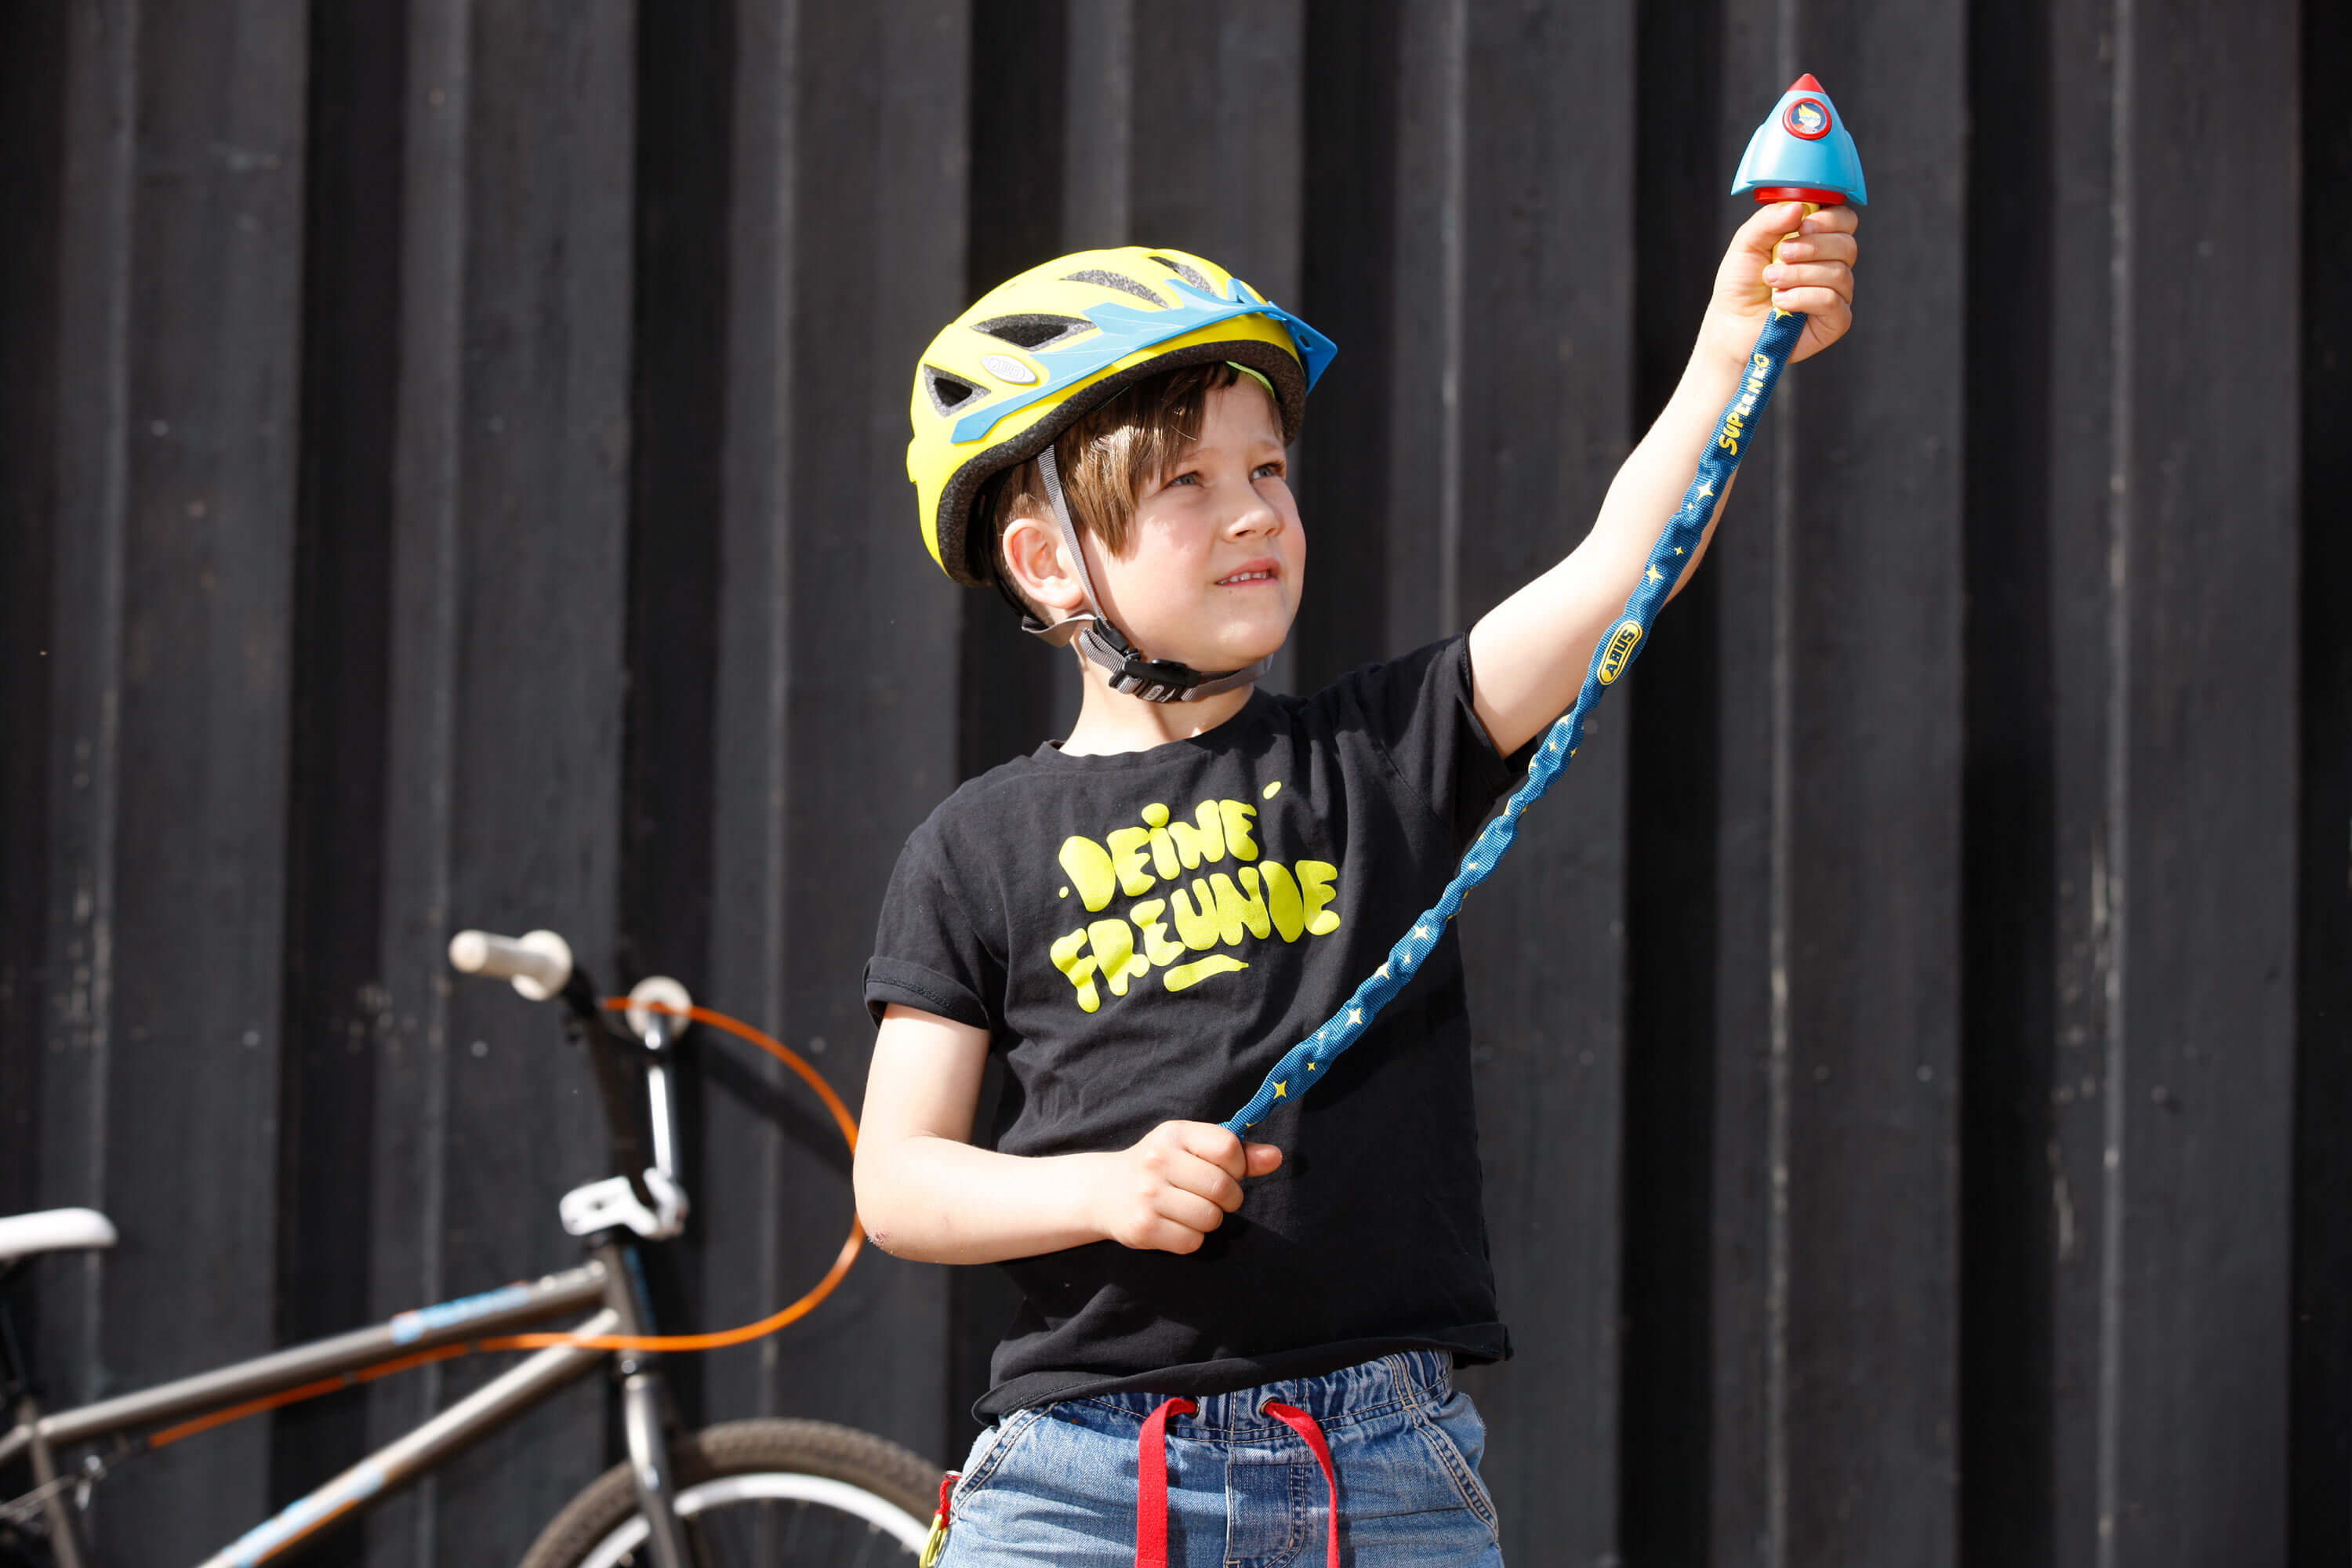 Kindgerechte Fahrradschlösser machen Spaß und vermitteln Wertschätzung fürs Material.